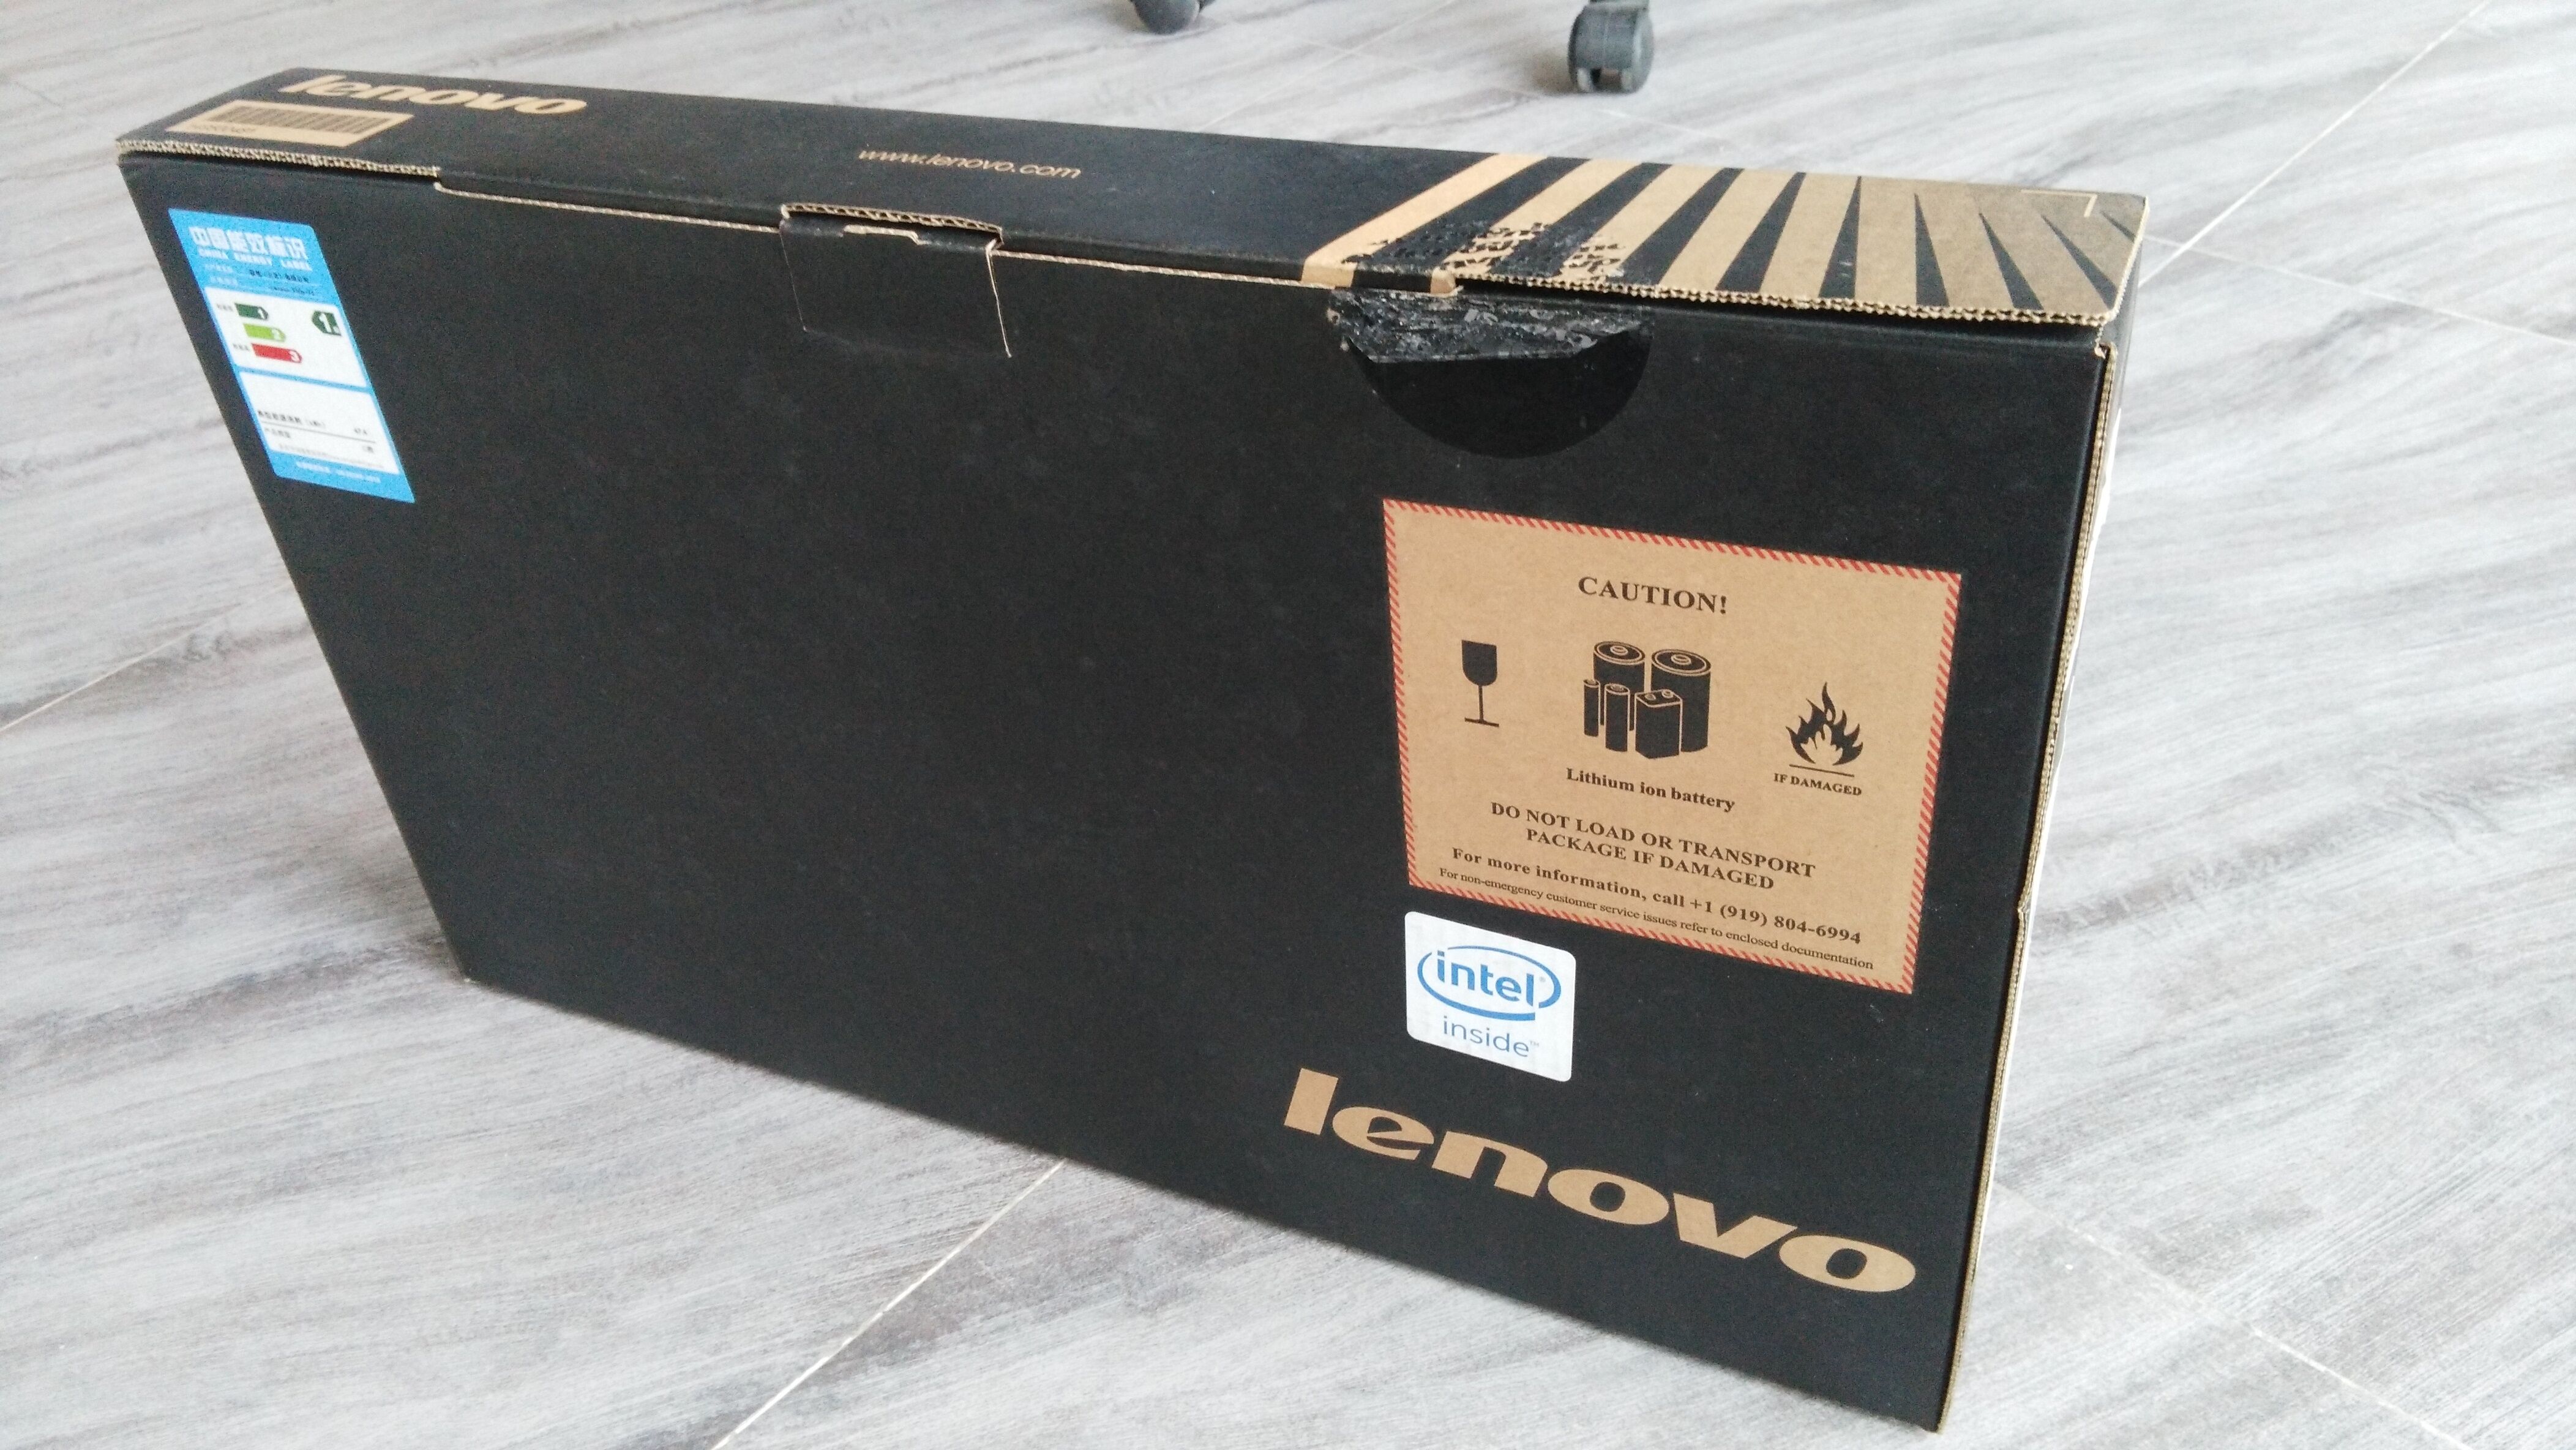 Lenovo IdeaPad Y50-70 15.6" i7-4710HQ 2.5GHz 1TB HDD 8GB RAM LAP